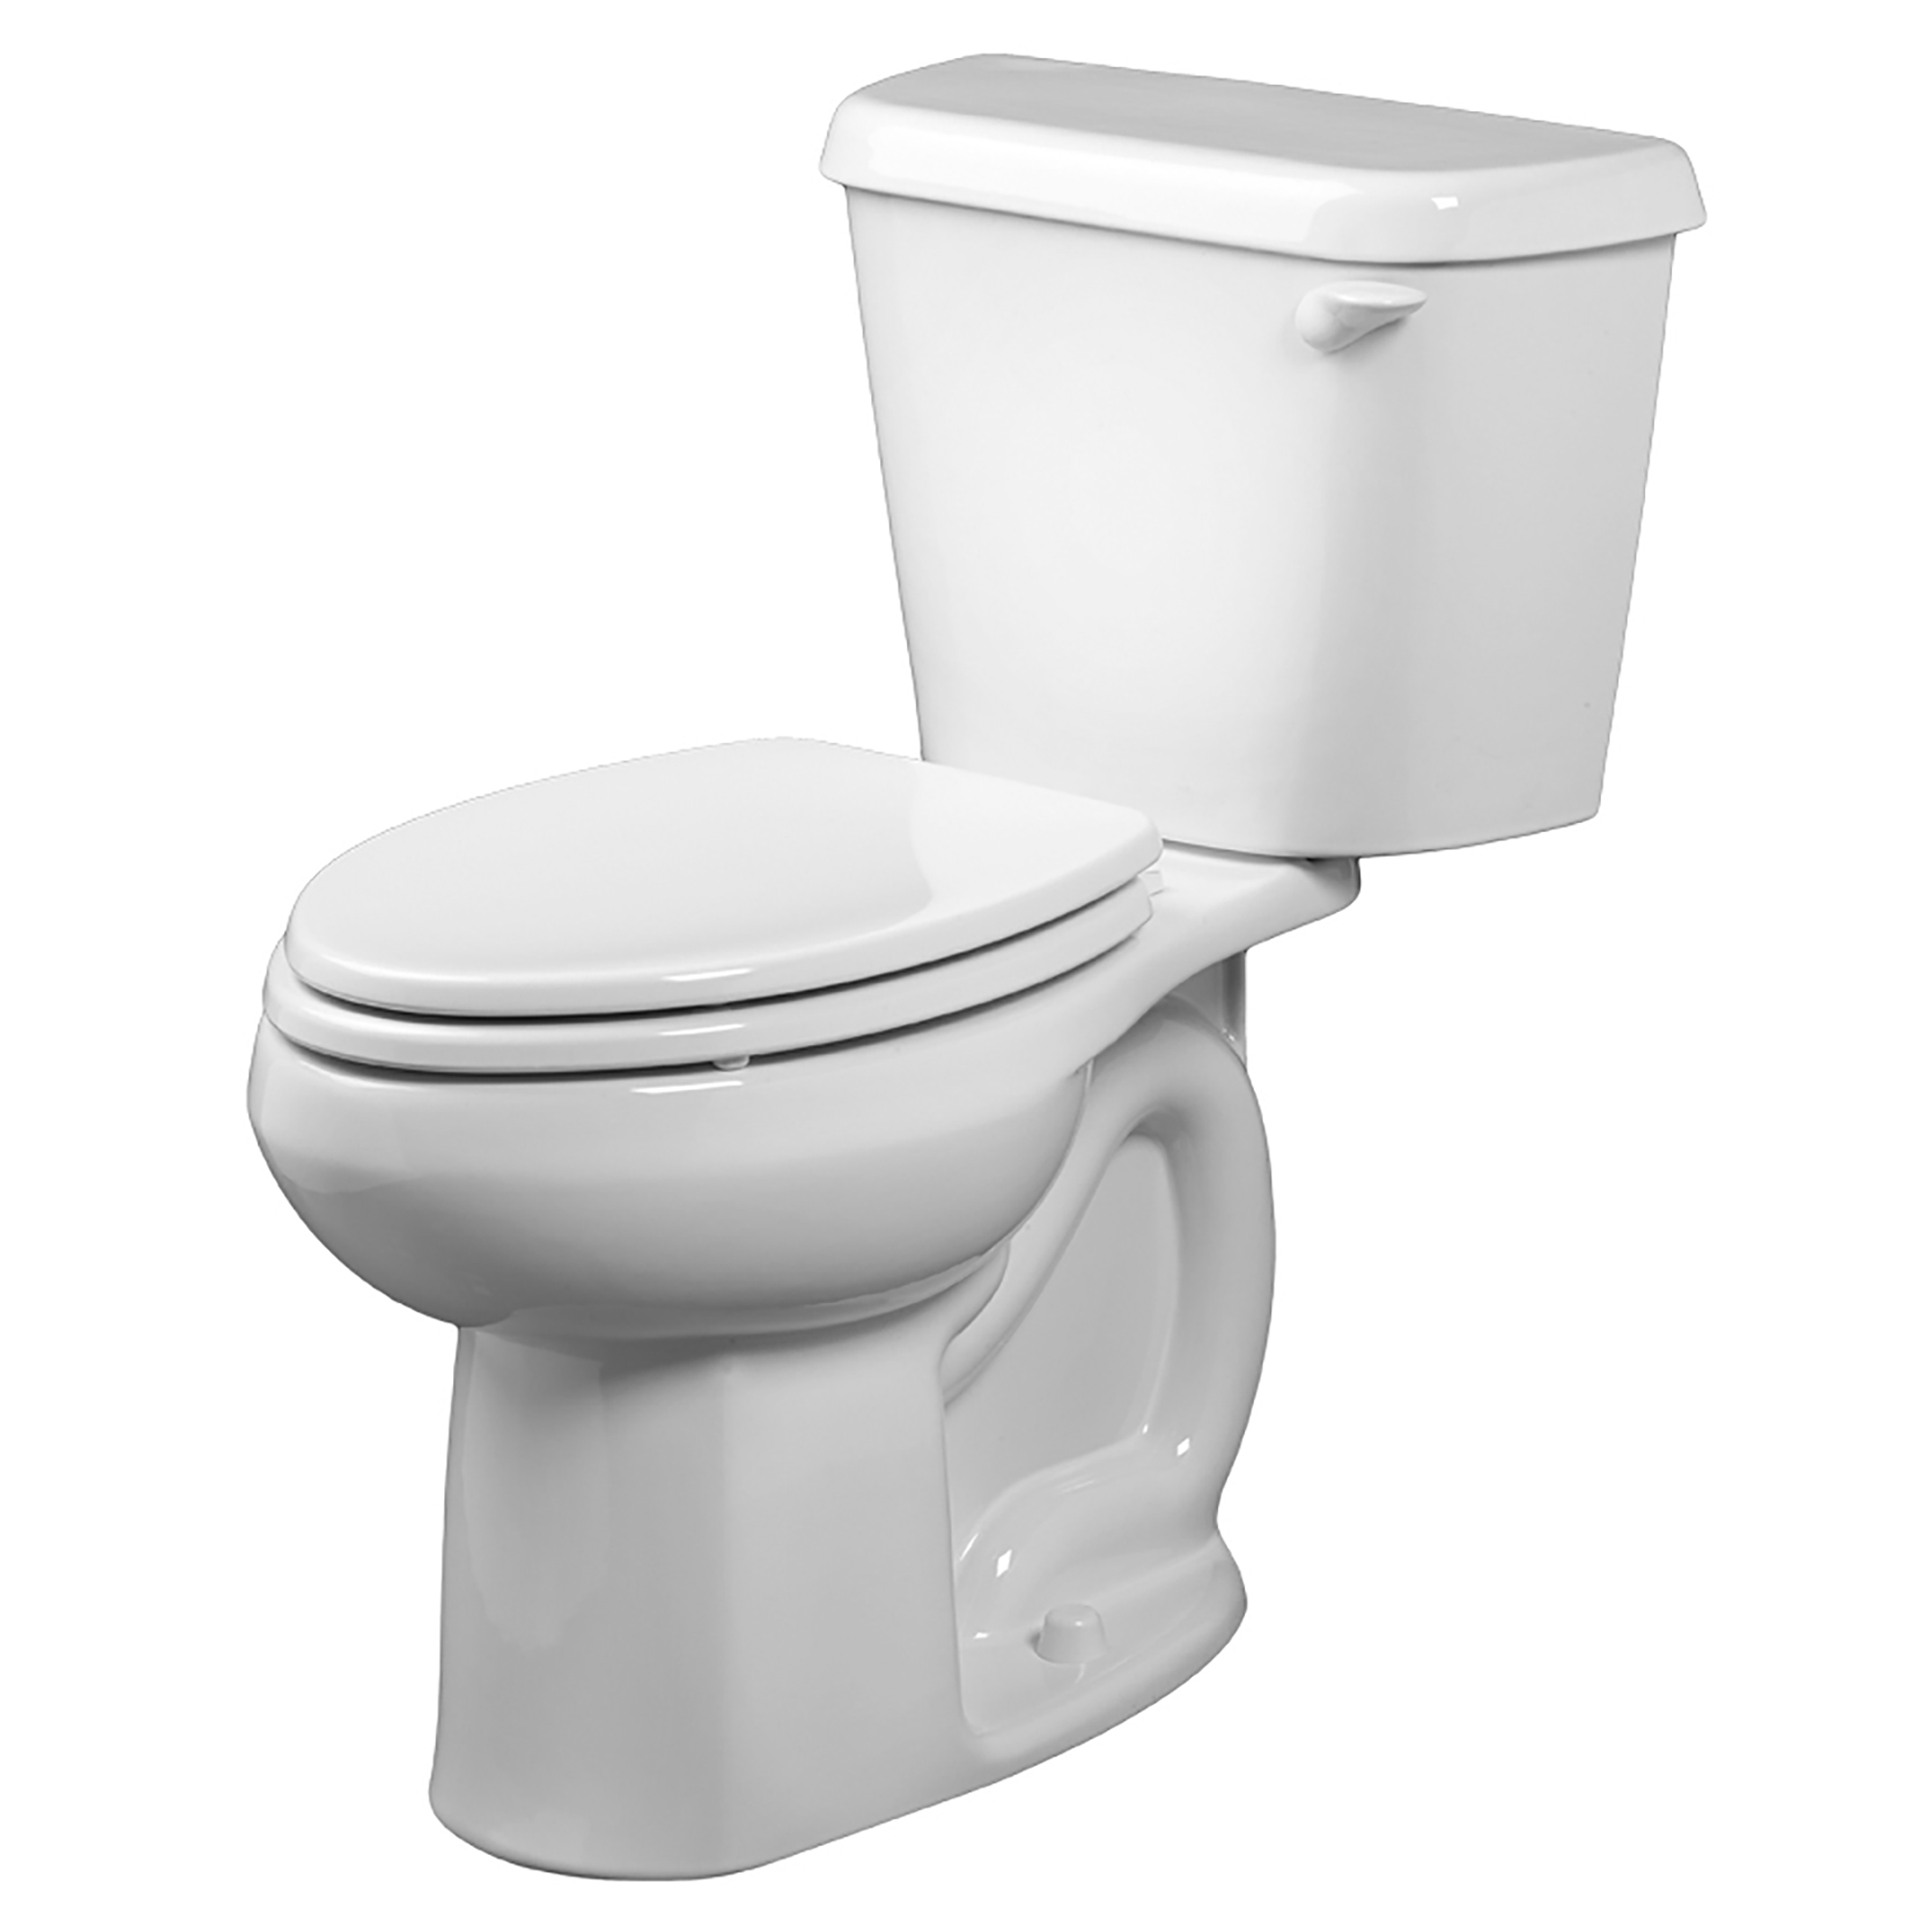 Toilette Colony, 2 pièces, 1,6 gpc/6,0 lpc, à cuvette allongée à hauteur de chaise, sans siège, levier de déclenchement à droite, sans siège